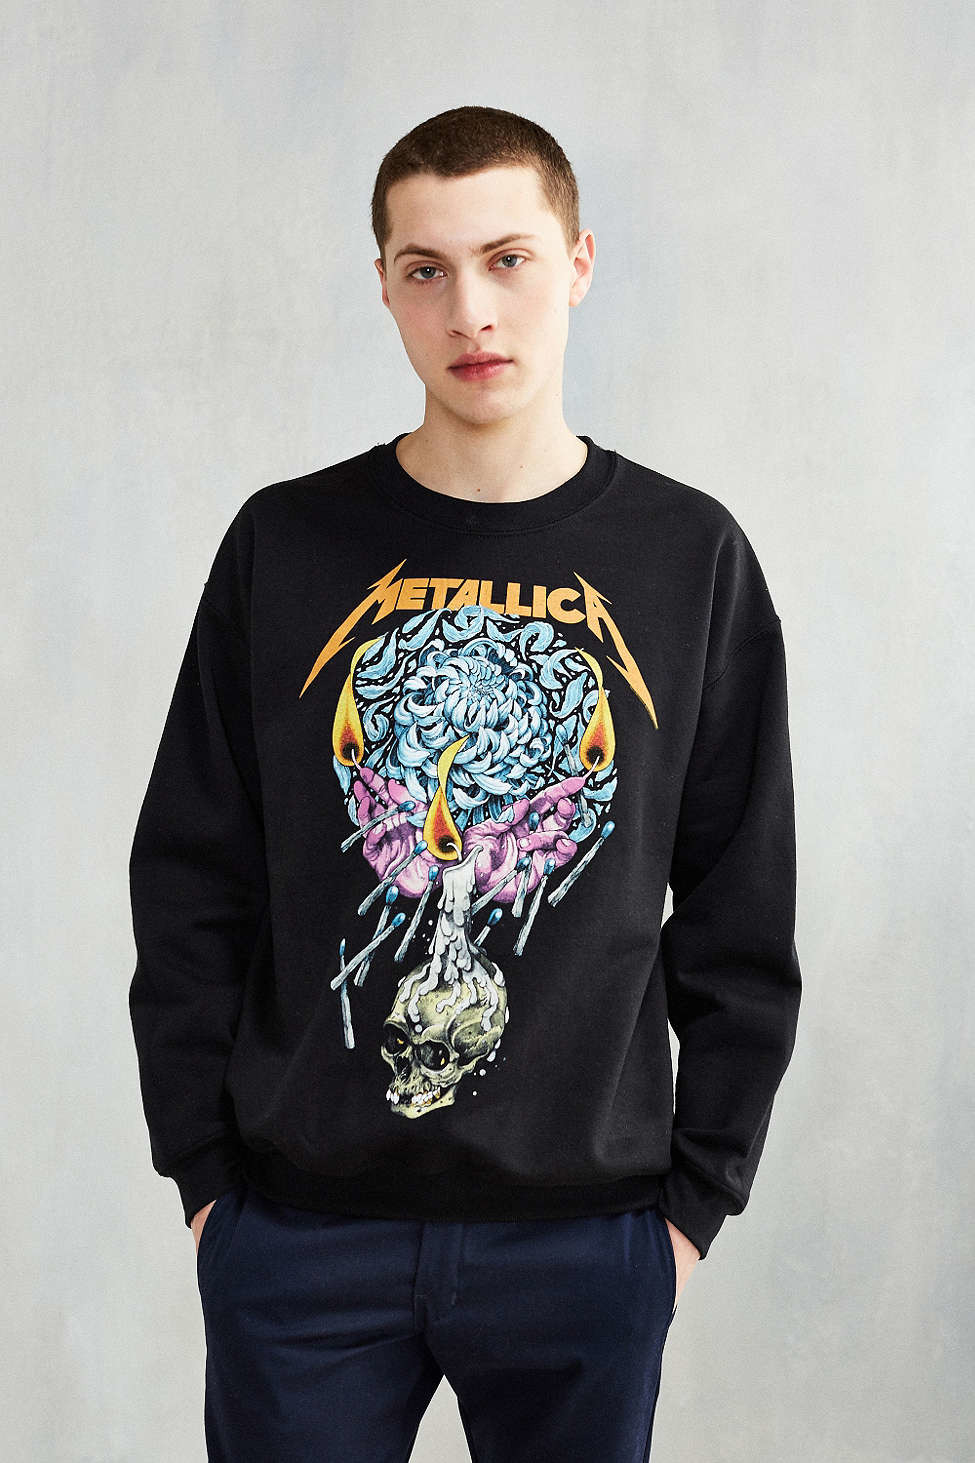 Download Urban Outfitters Cotton Metallica Crew Neck Sweatshirt in ...